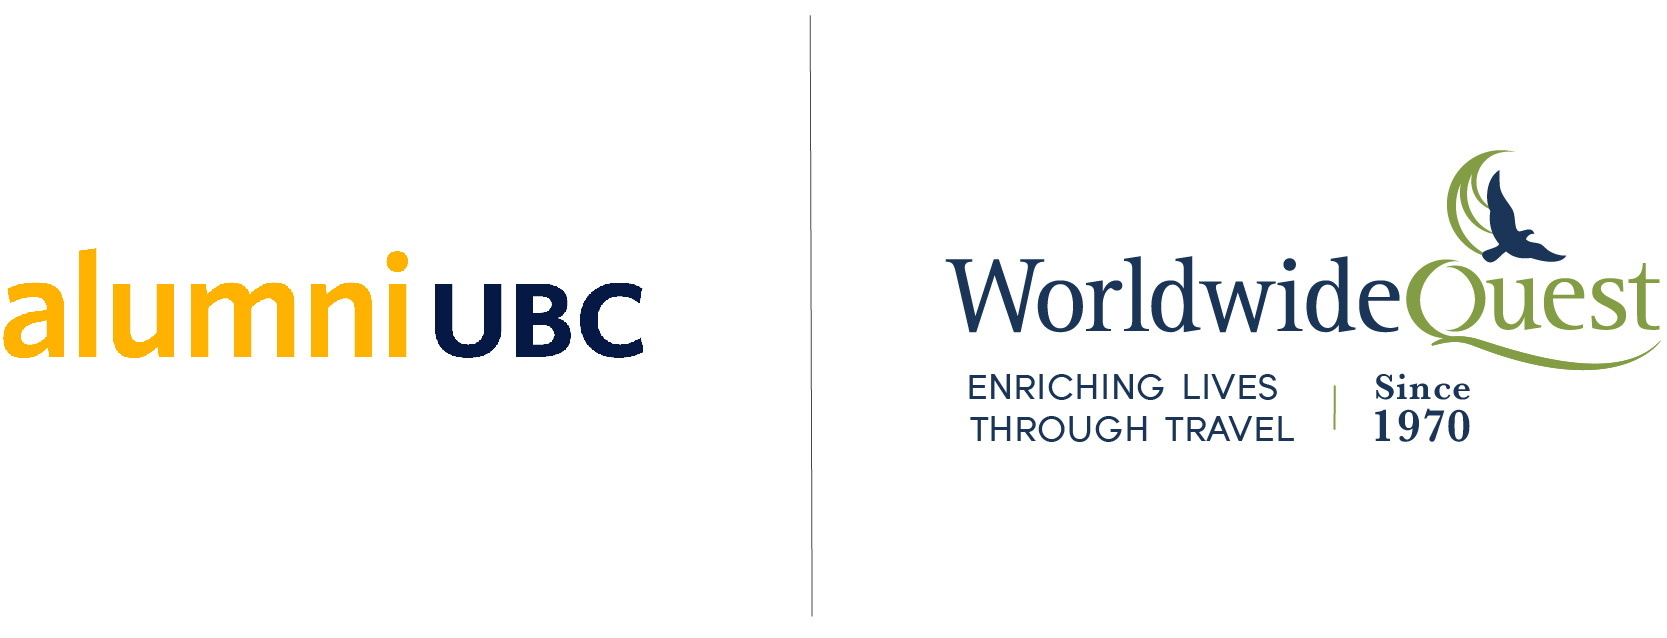 alumni UBC | Worldwide Quest